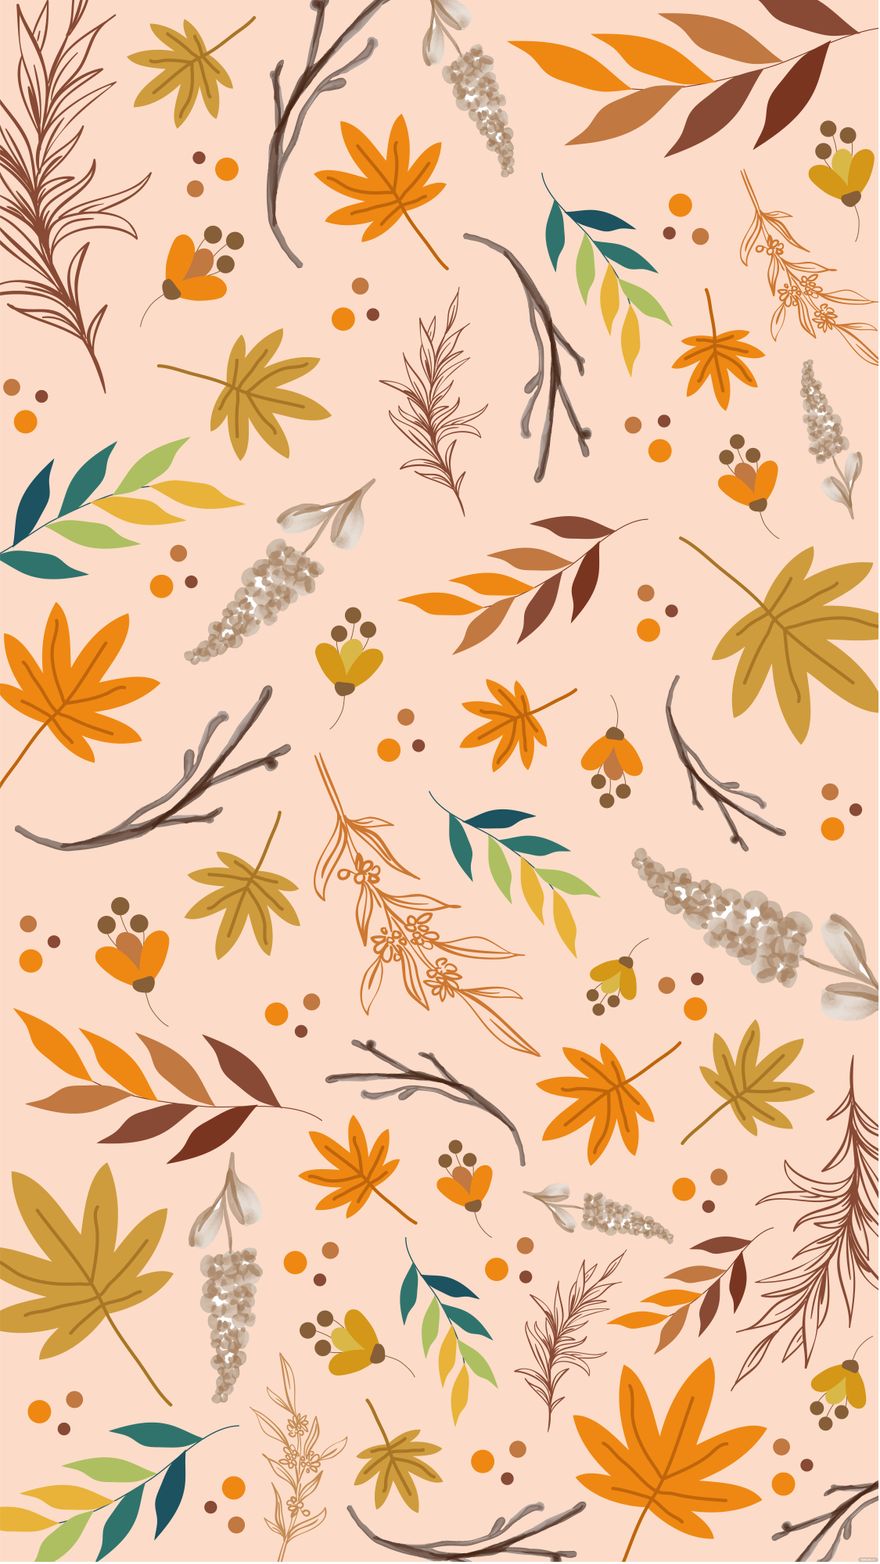 Vintage Fall Floral Background in Illustrator, EPS, SVG, JPG